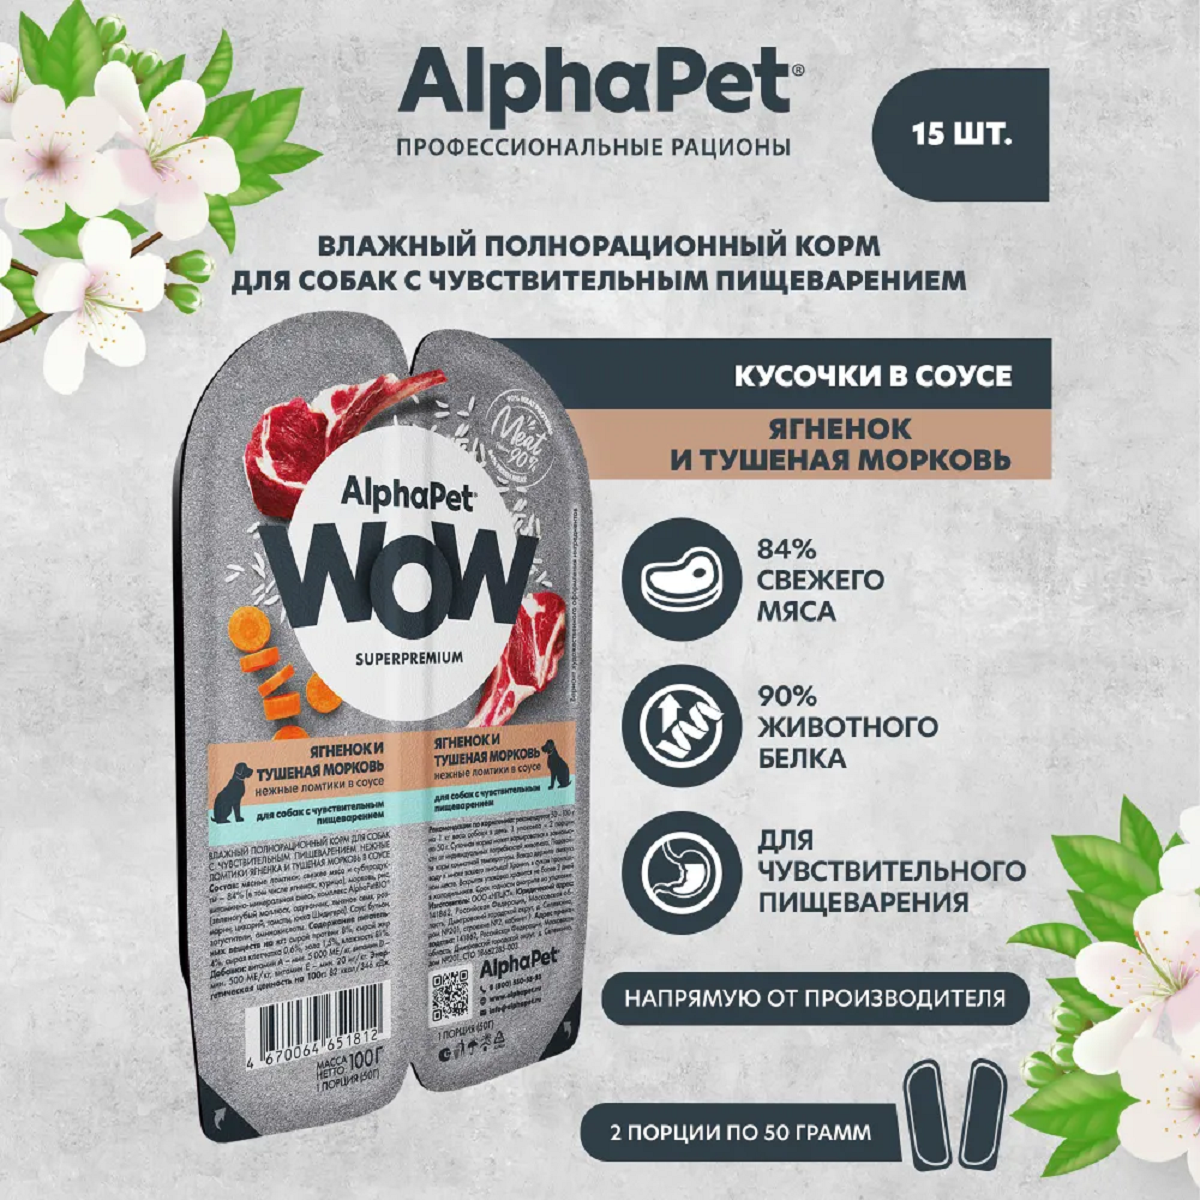 AlphaPet WOW пауч для собак с чувствительным пищеварением ломтики в соусе Ягненок и тушеная морковь 100г (15 штук)